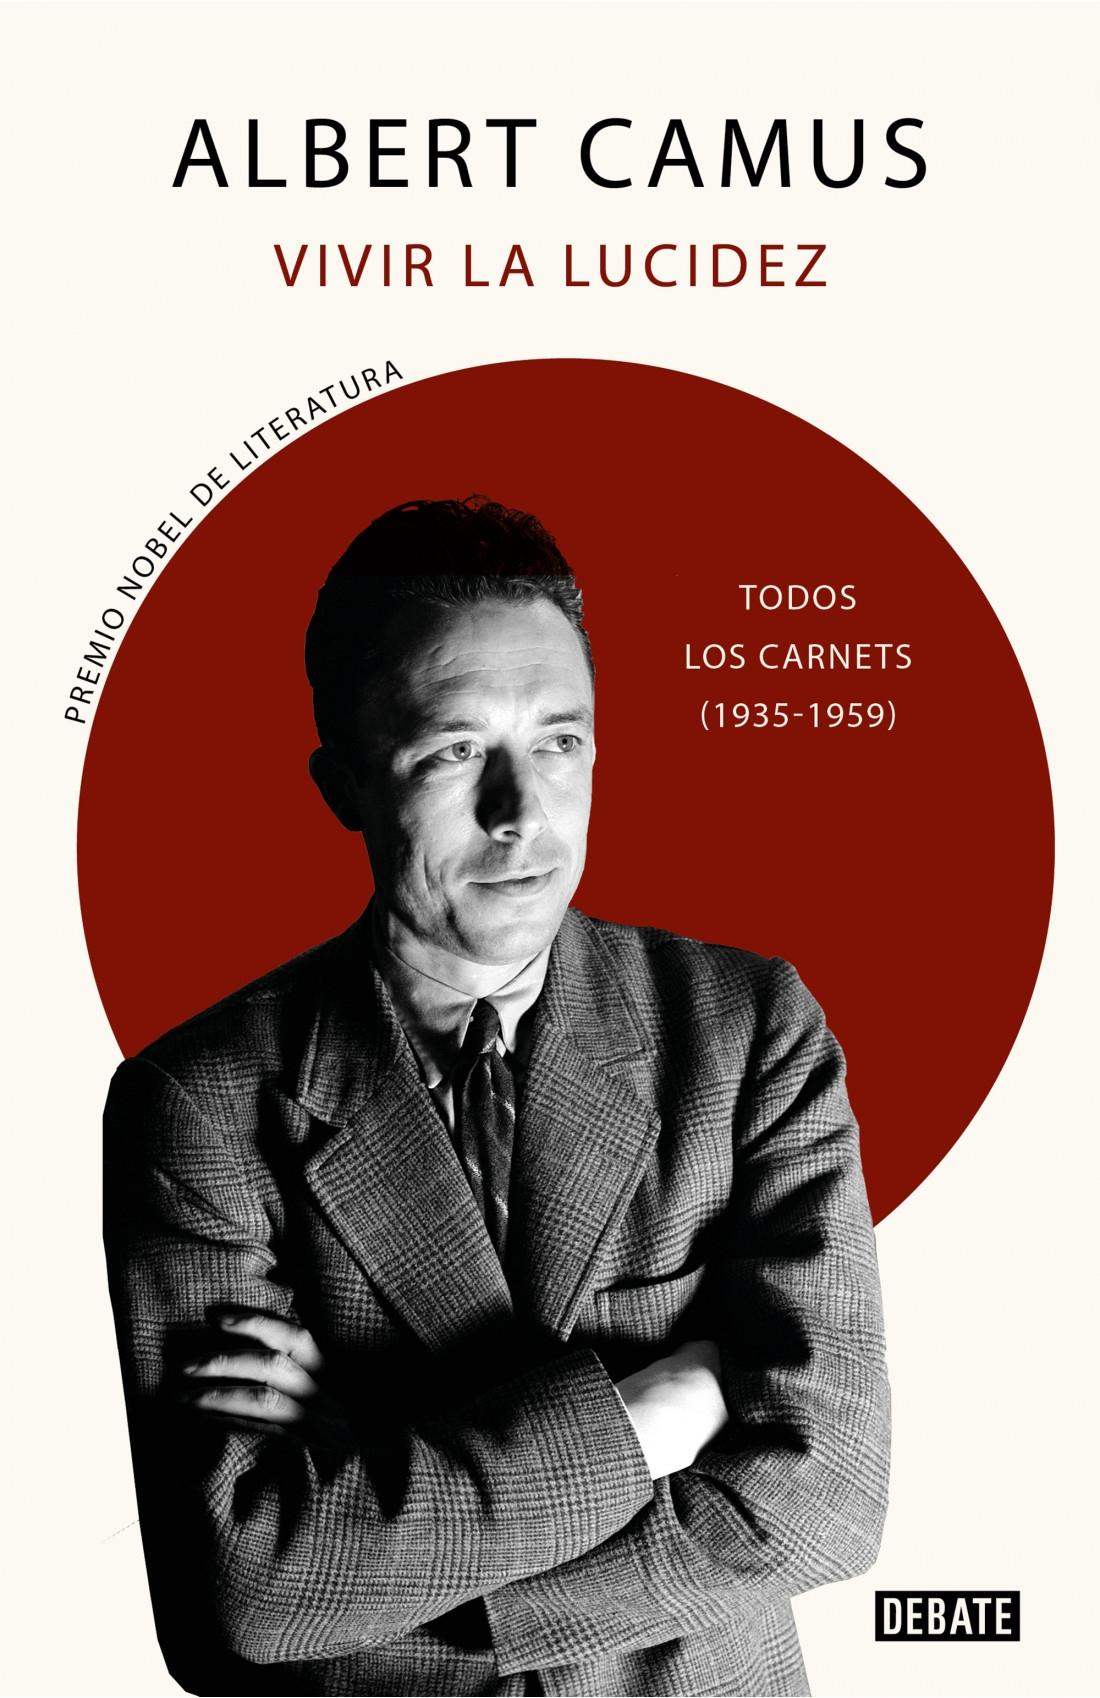 VIVIR LA LUCIDEZ "TODOS LOS CARNETS (1935-1959)"